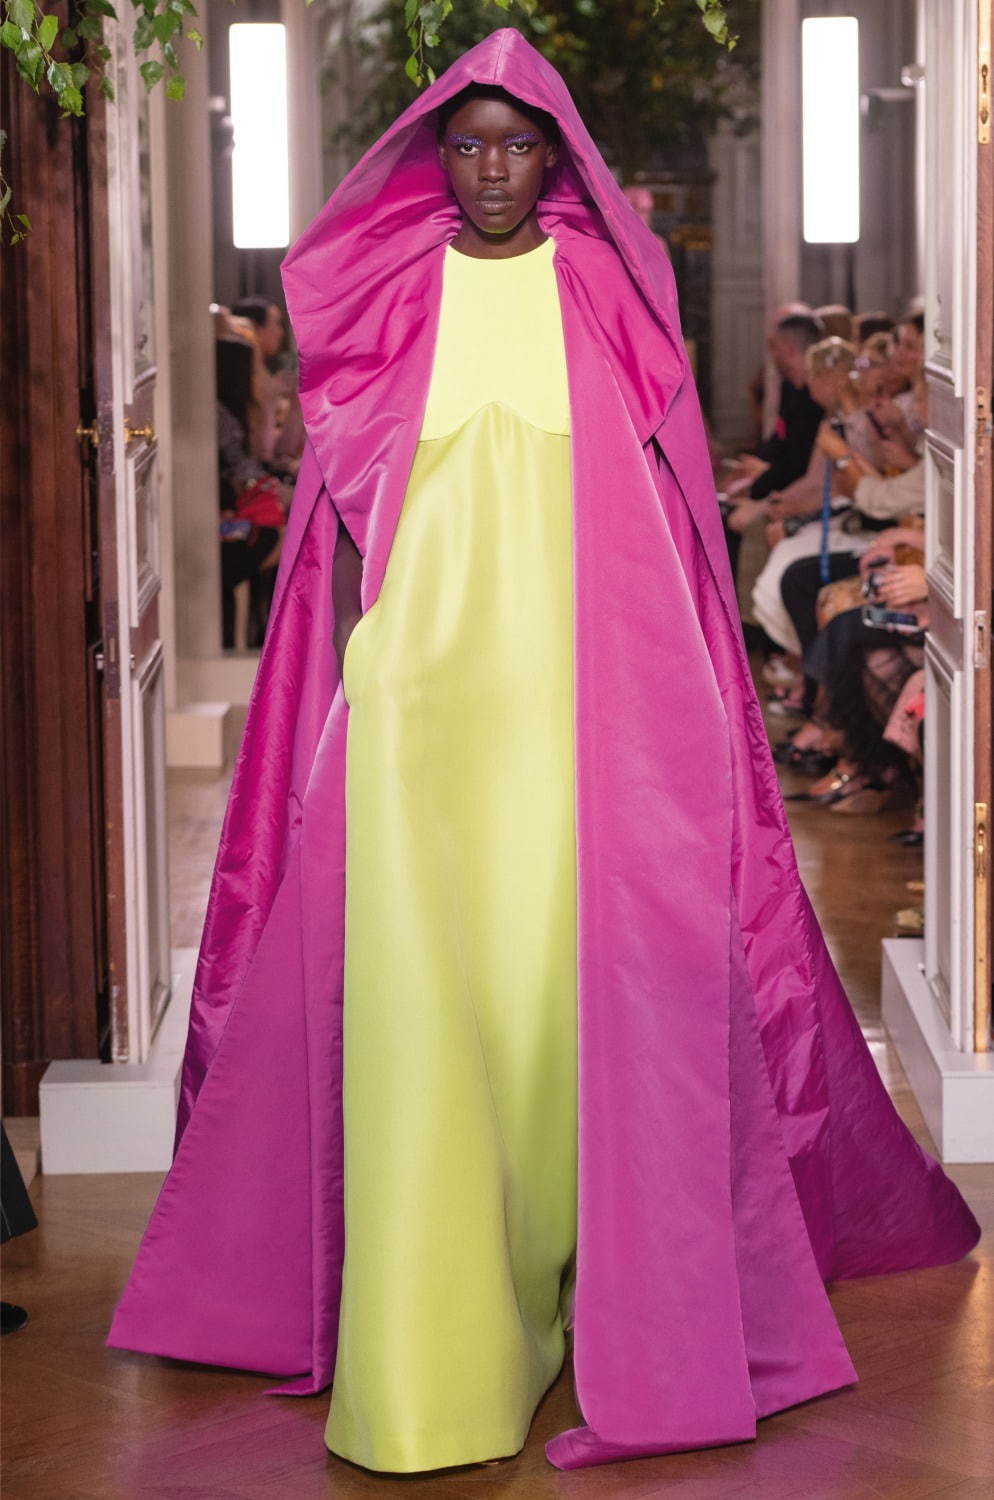 ヴァレンティノ オートクチュール(VALENTINO Haute Couture ) 2019-20年秋冬ウィメンズコレクション シルエット - 写真69